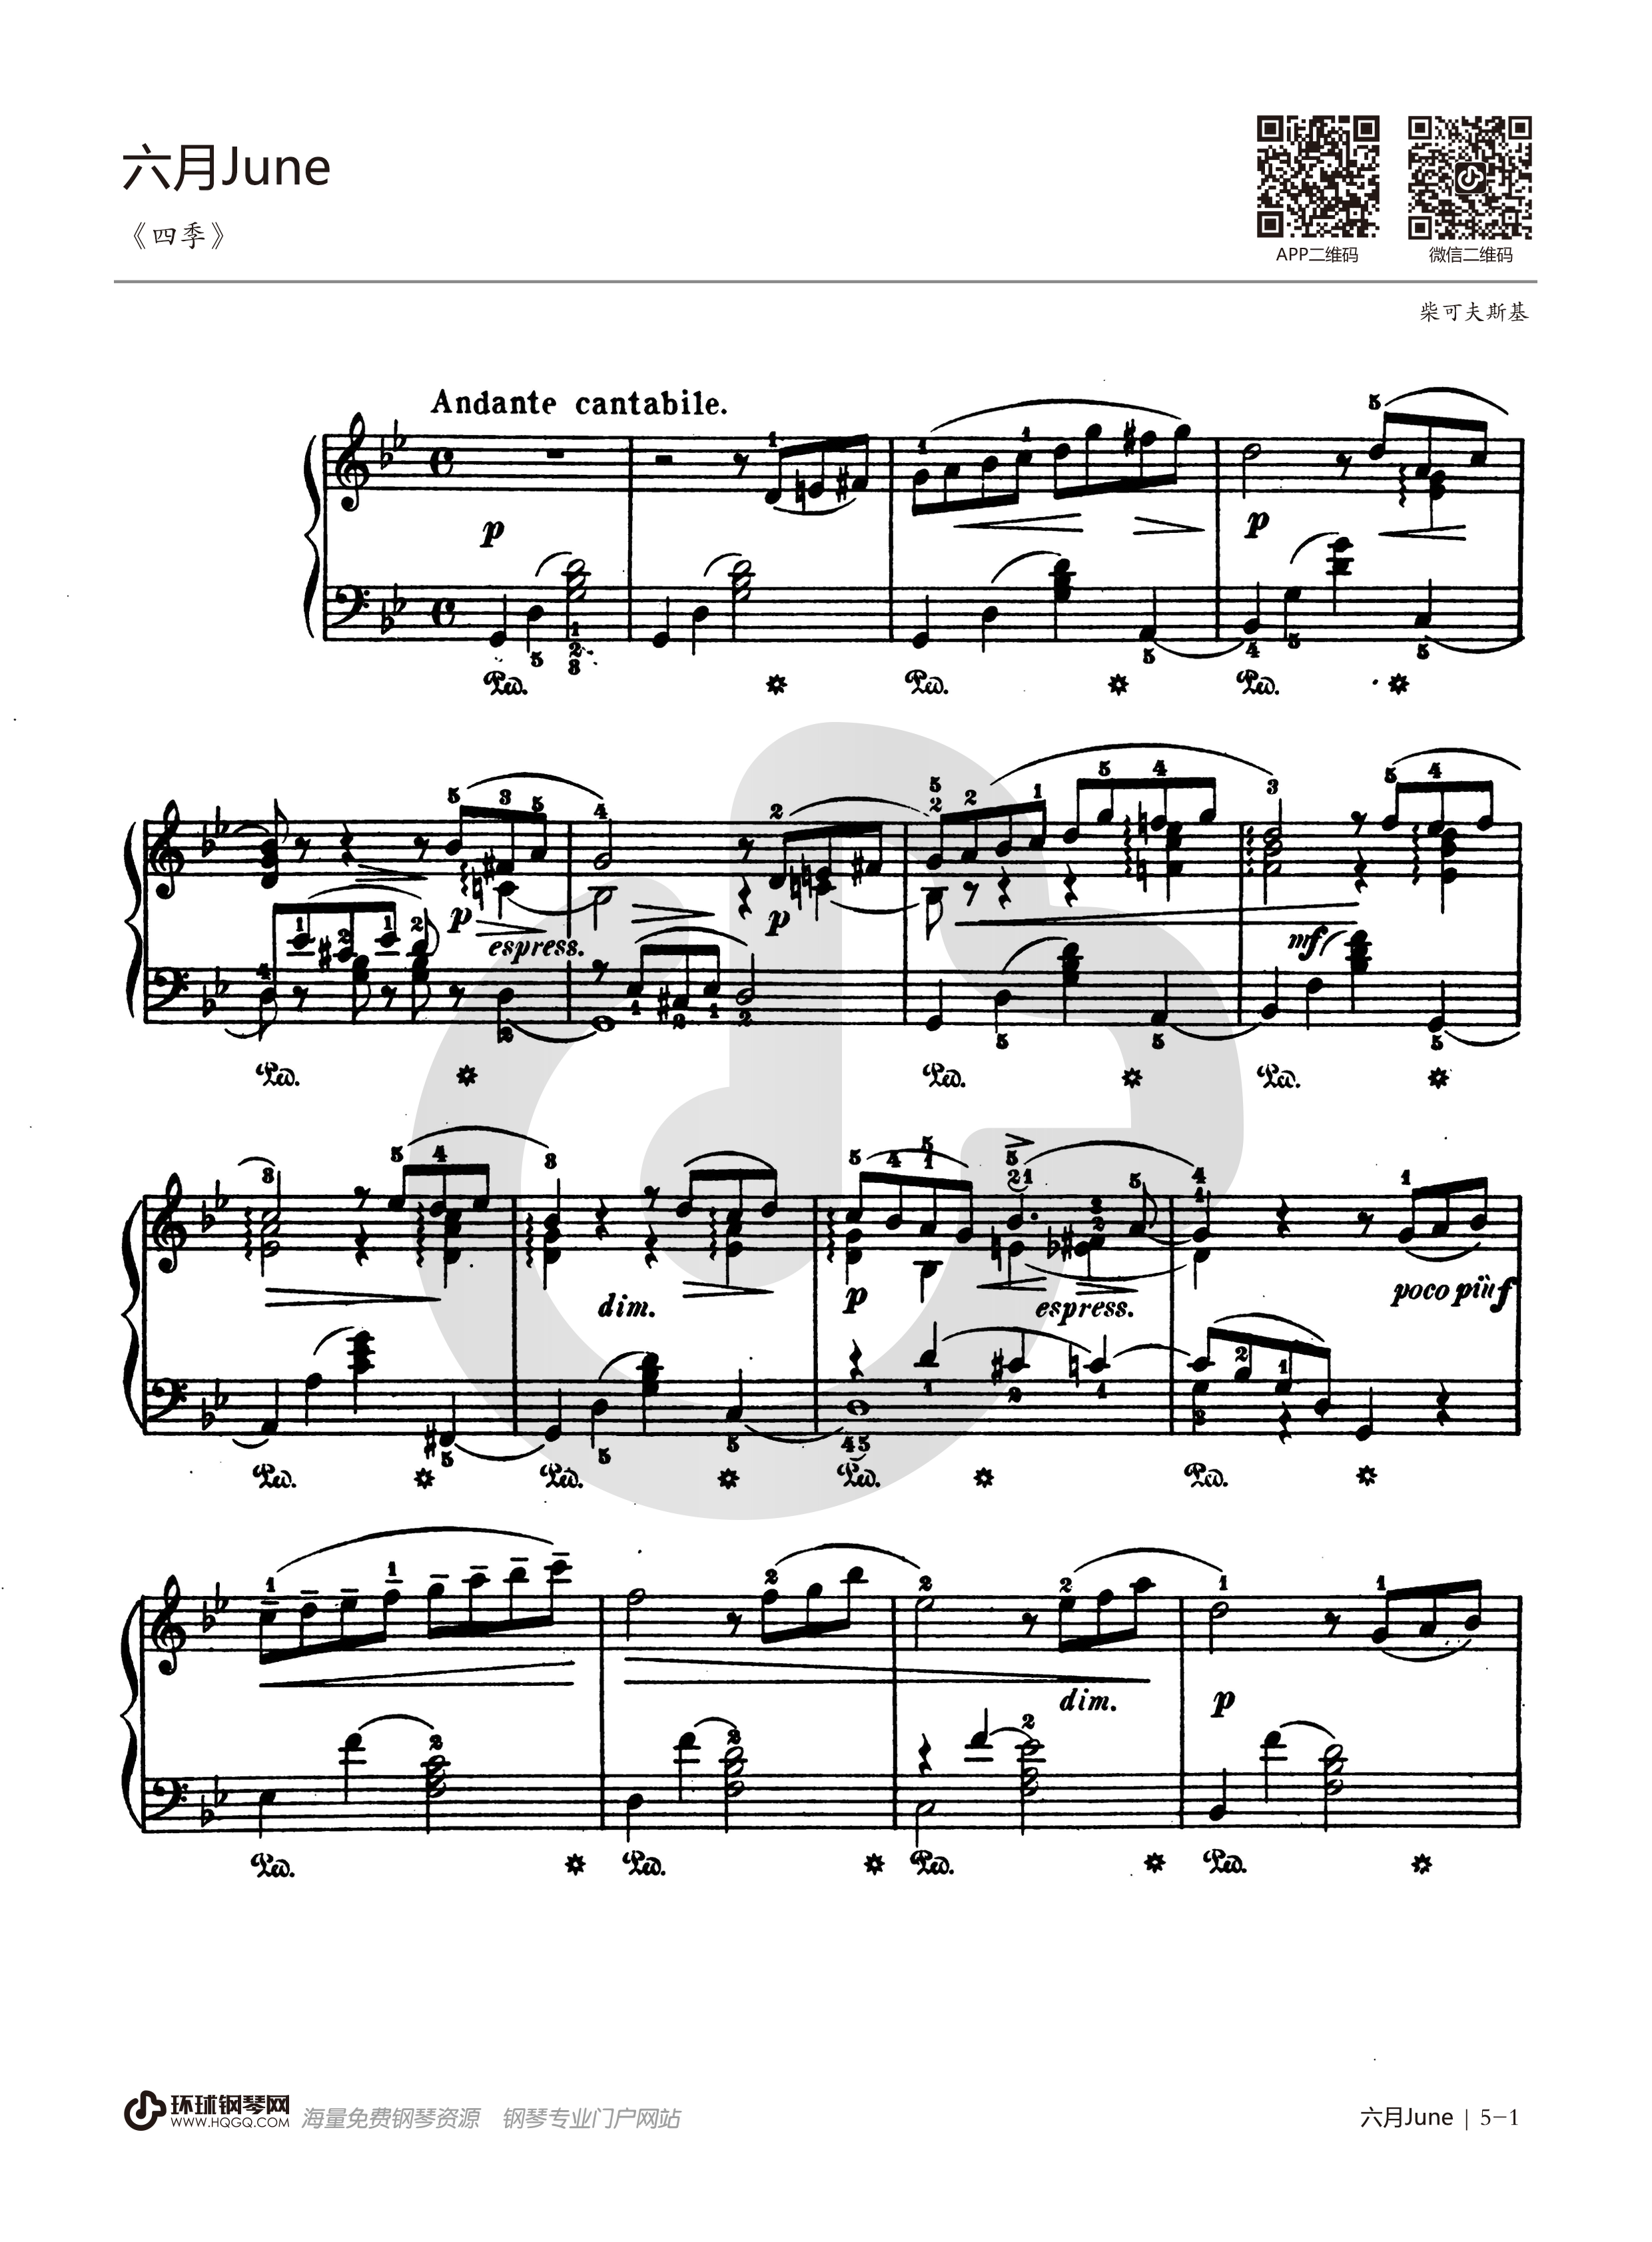 六月船歌-柴可夫斯基-钢琴谱文件（五线谱、双手简谱、数字谱、Midi、PDF）免费下载